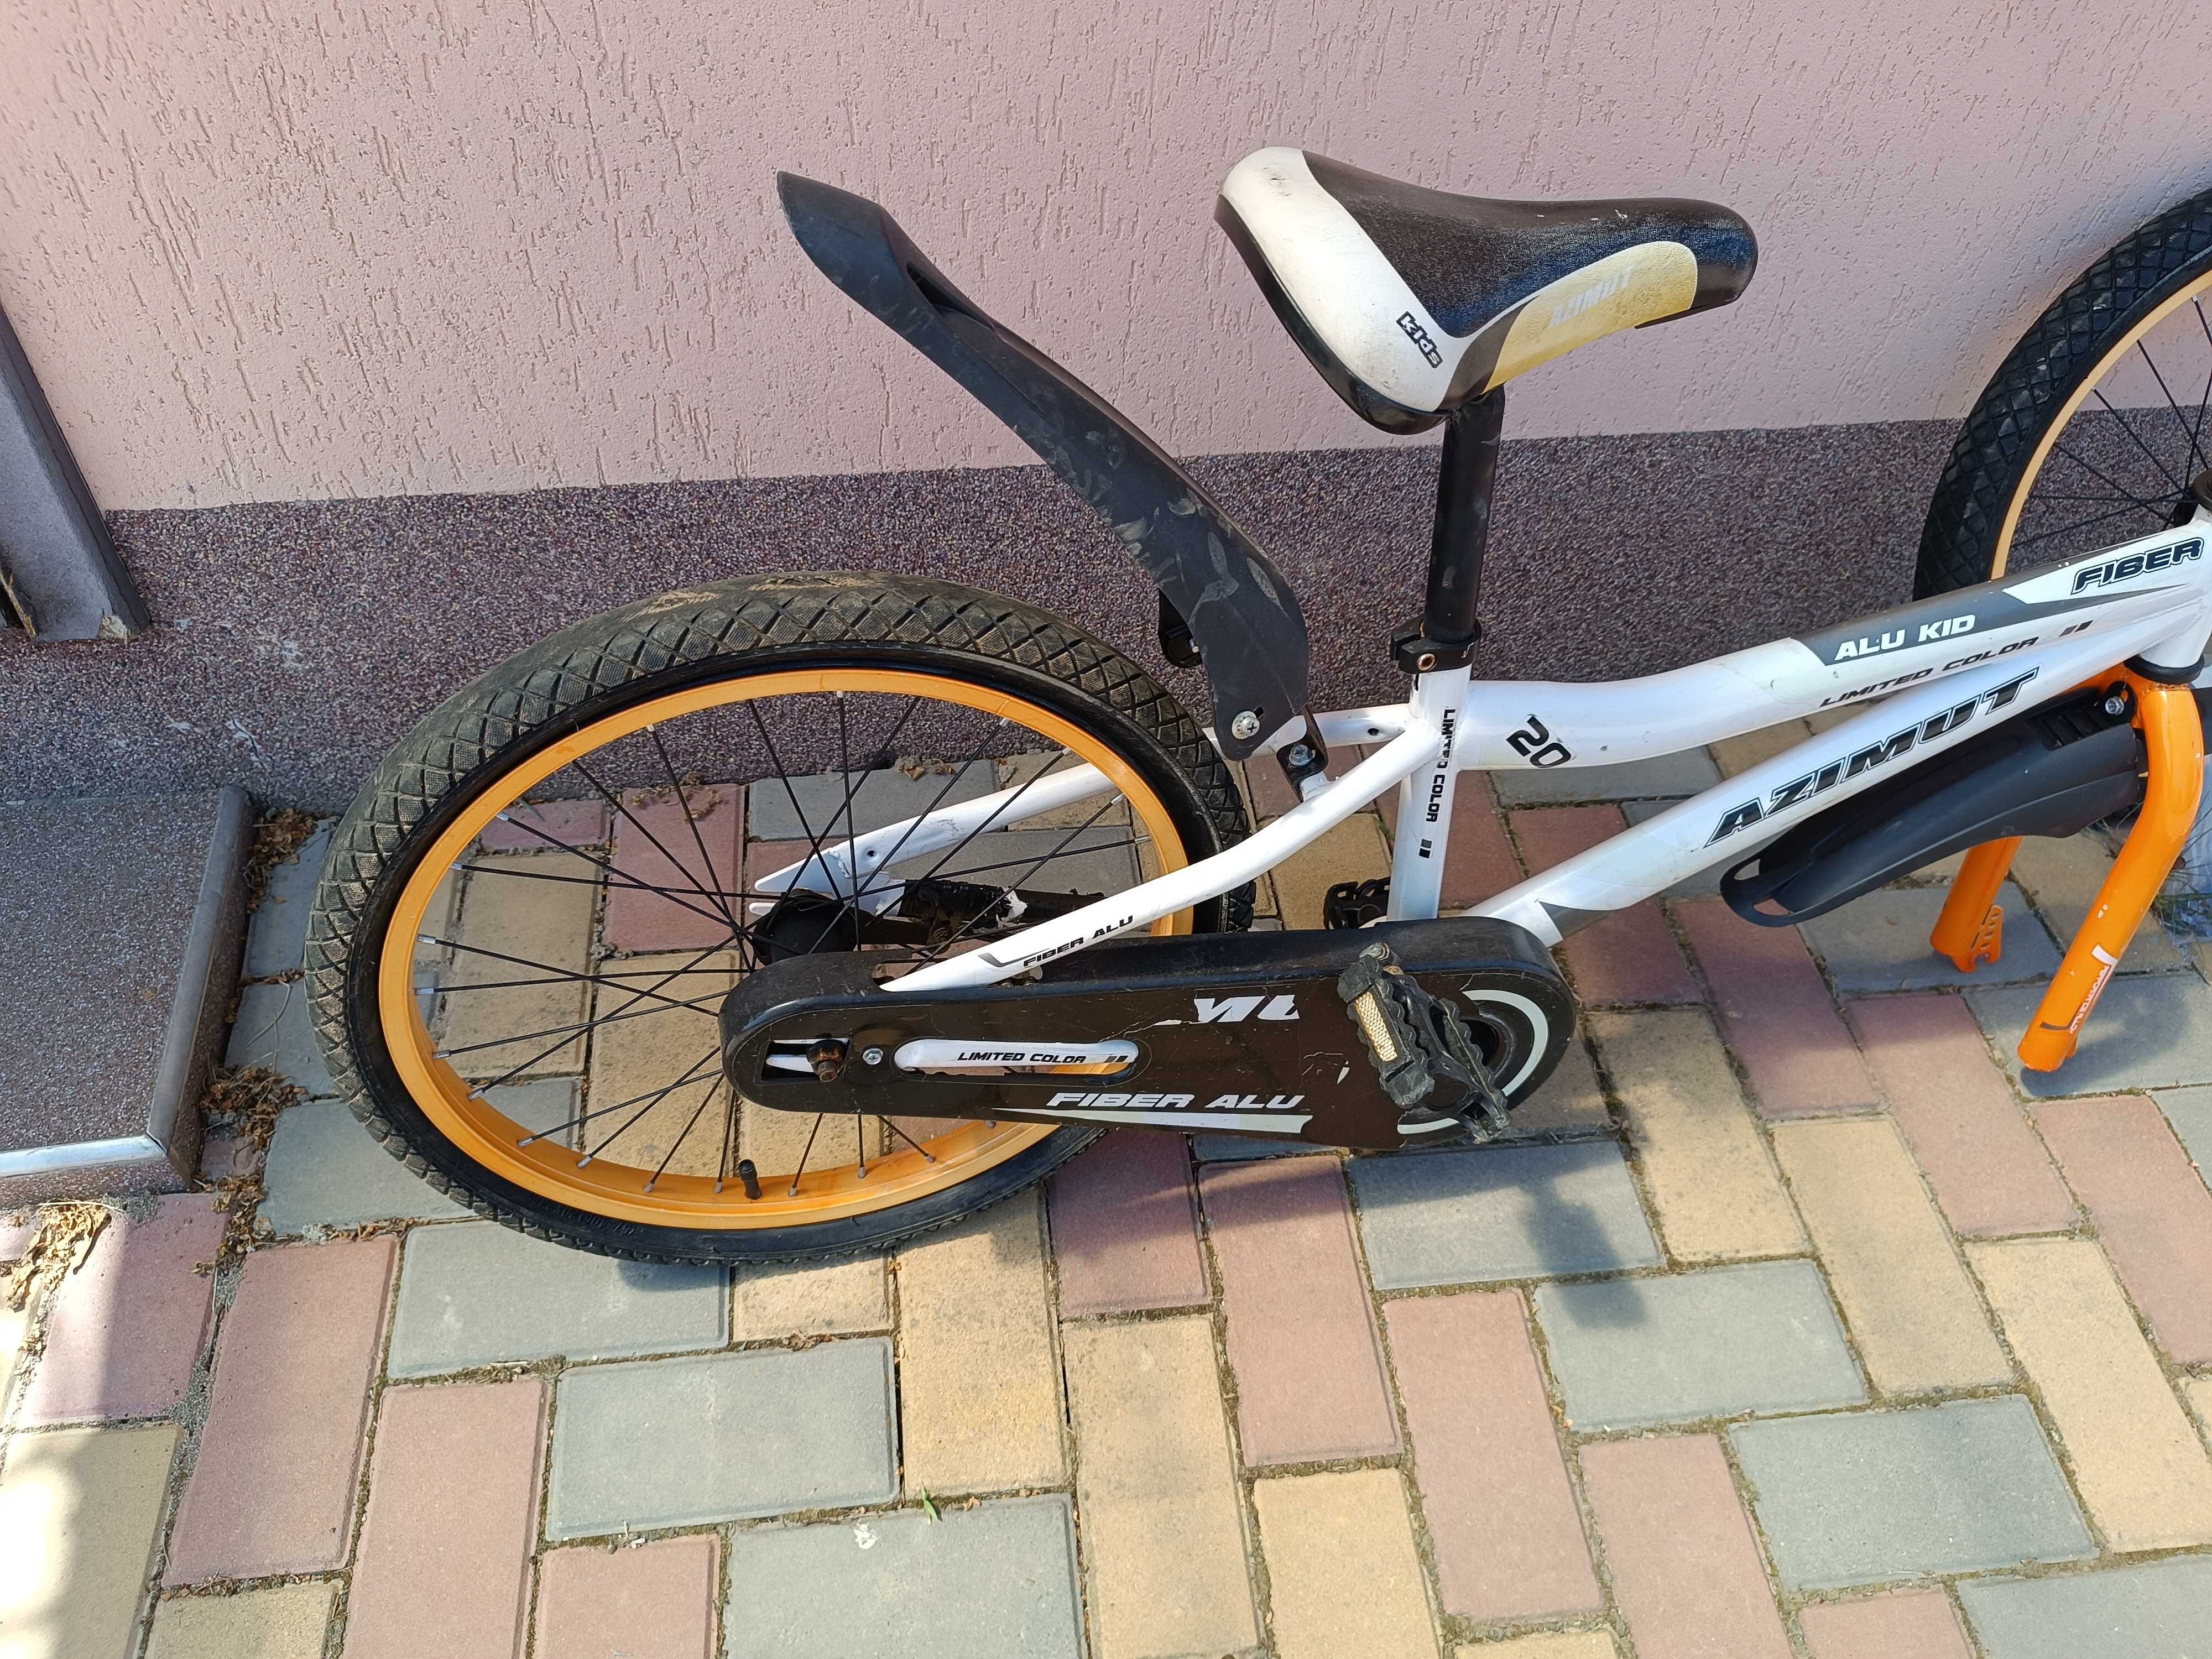 Дитячий велосипед AZIMUT на 20 колесах (потребує ремонту)